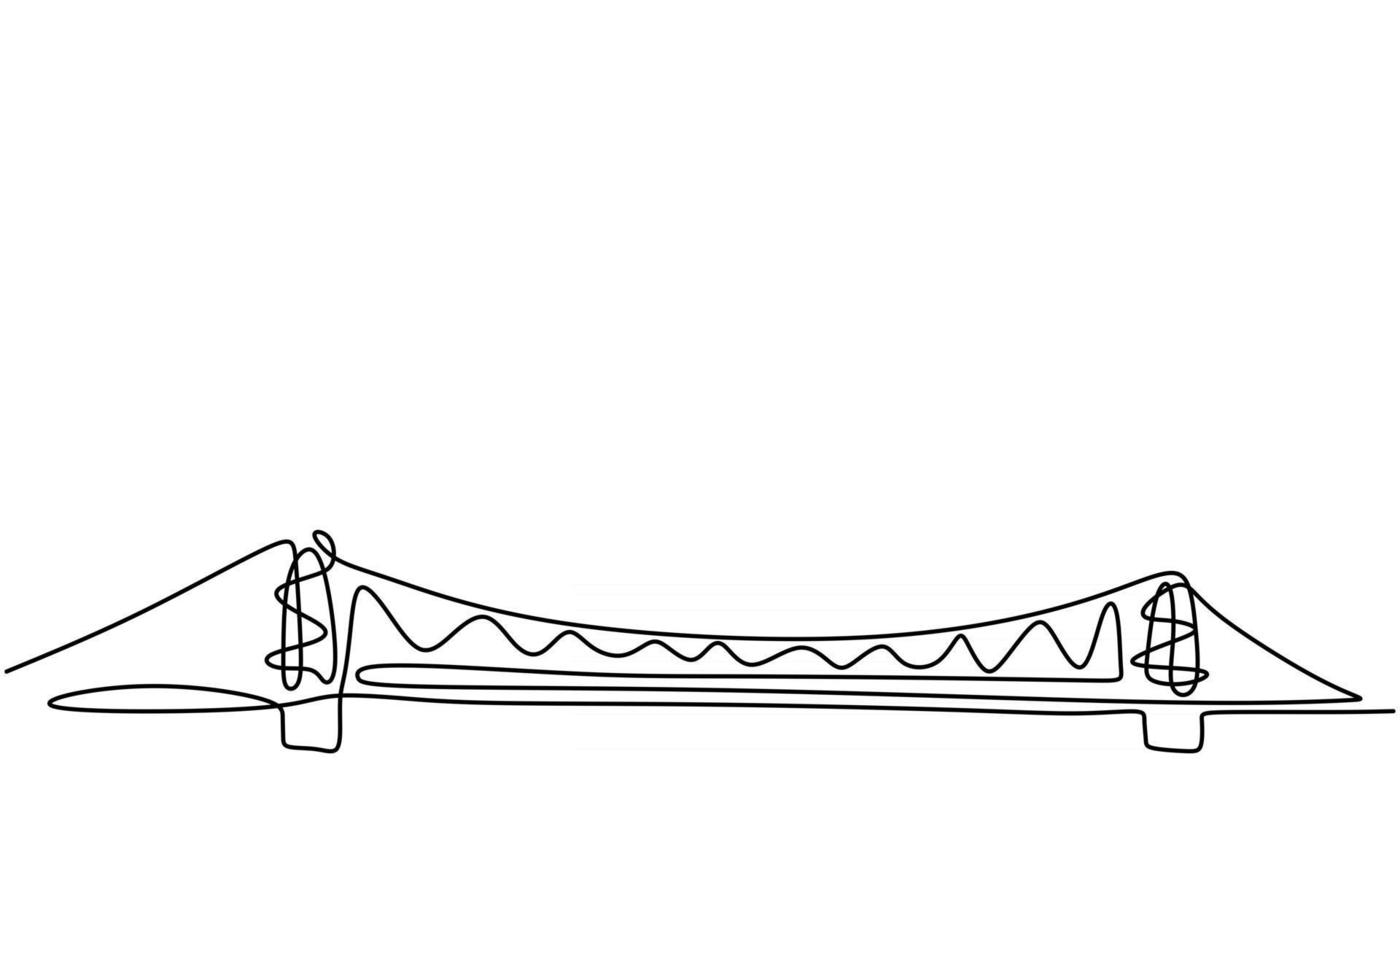 gigantische brug over de rivier. ononderbroken één lijn van het ontwerp van de brugtekening. eenvoudige moderne minimalistische stijl geïsoleerd op een witte achtergrond. vector